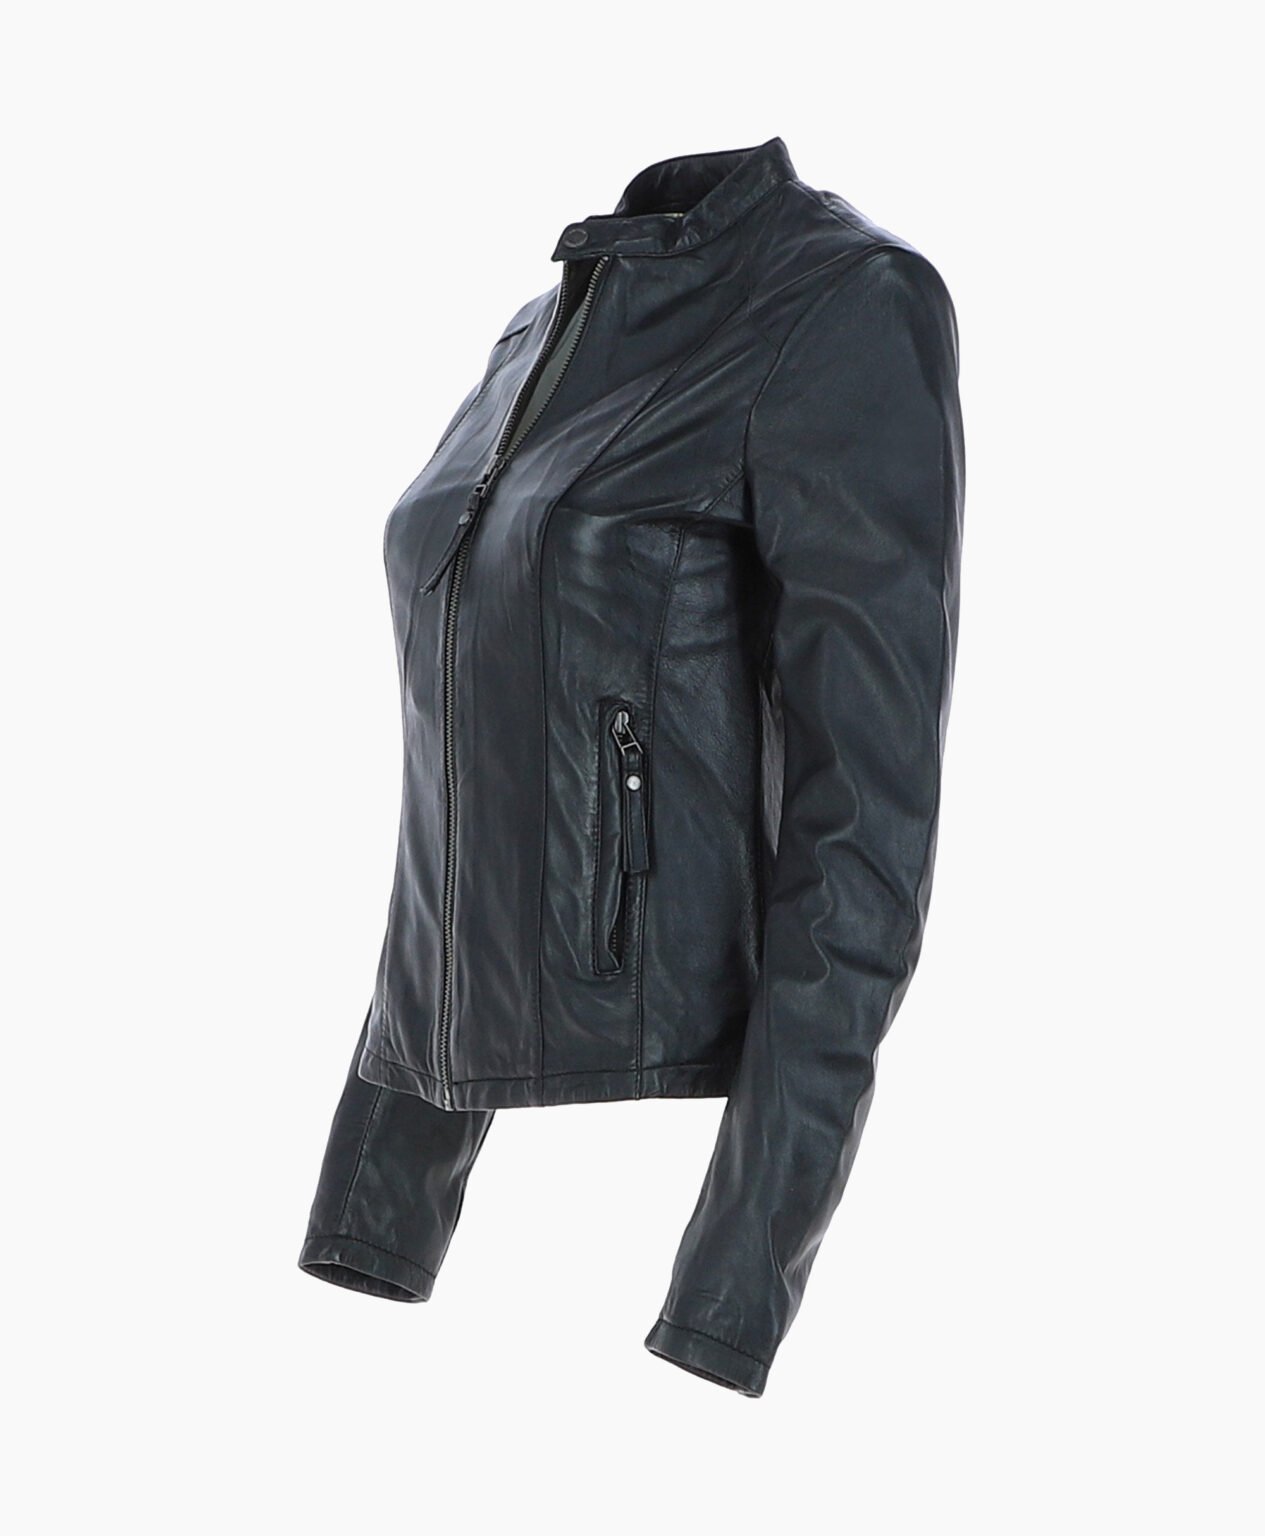 vogue-jacket-leather-biker-jacket-black-cicero-image201